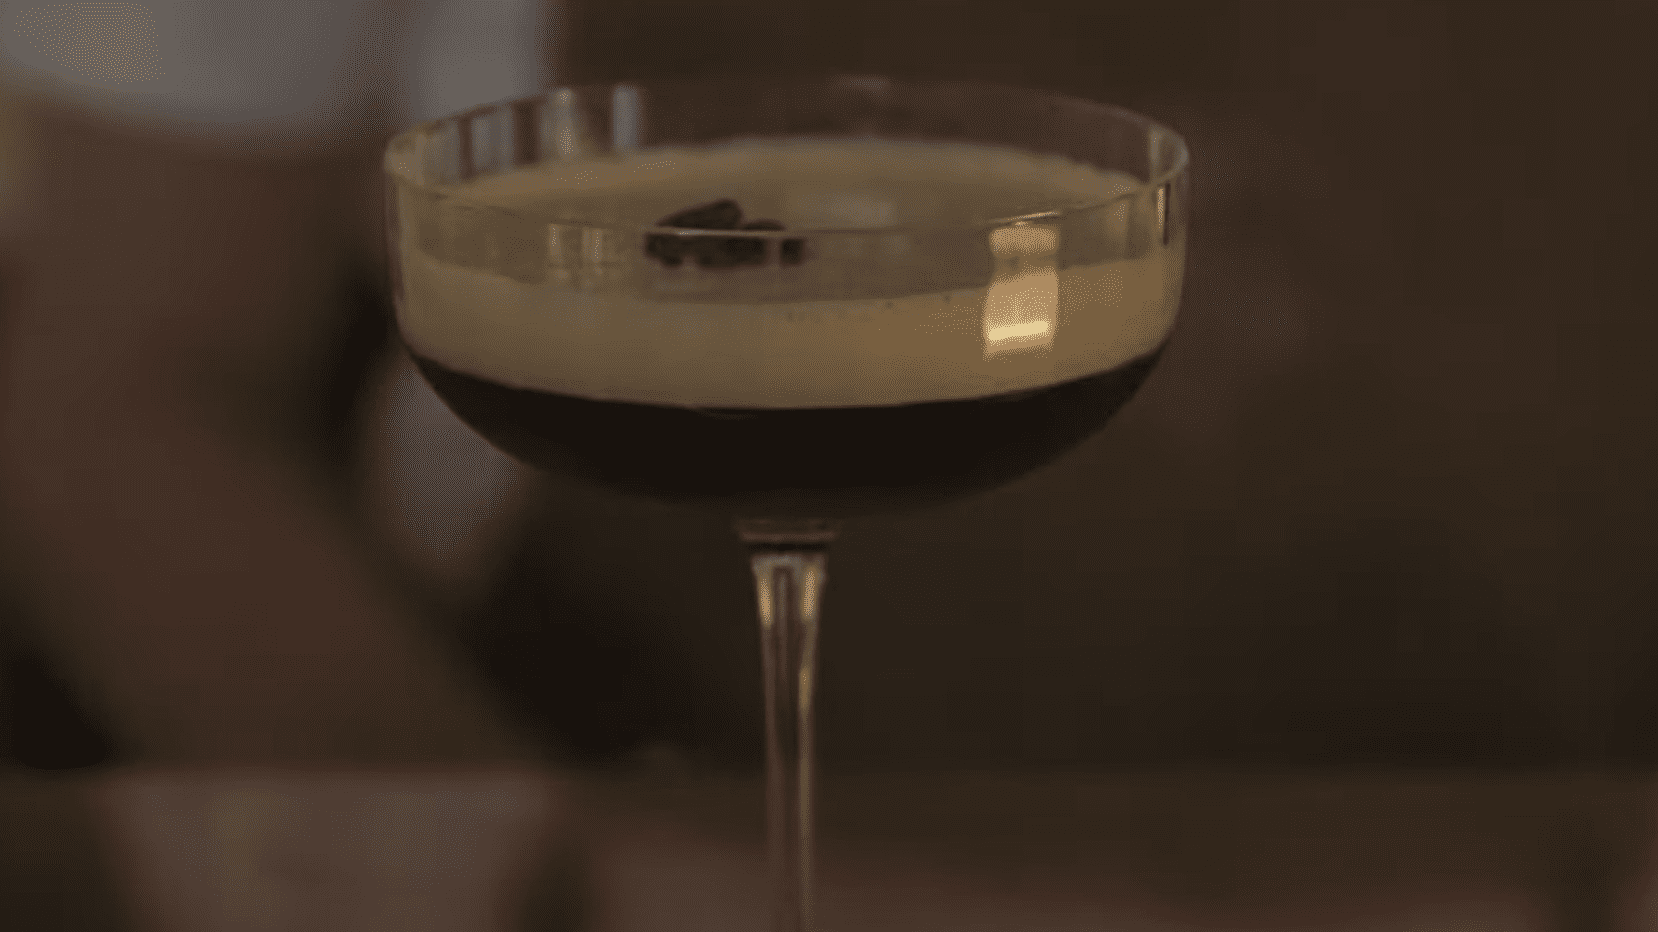 Tequila Espresso Martini